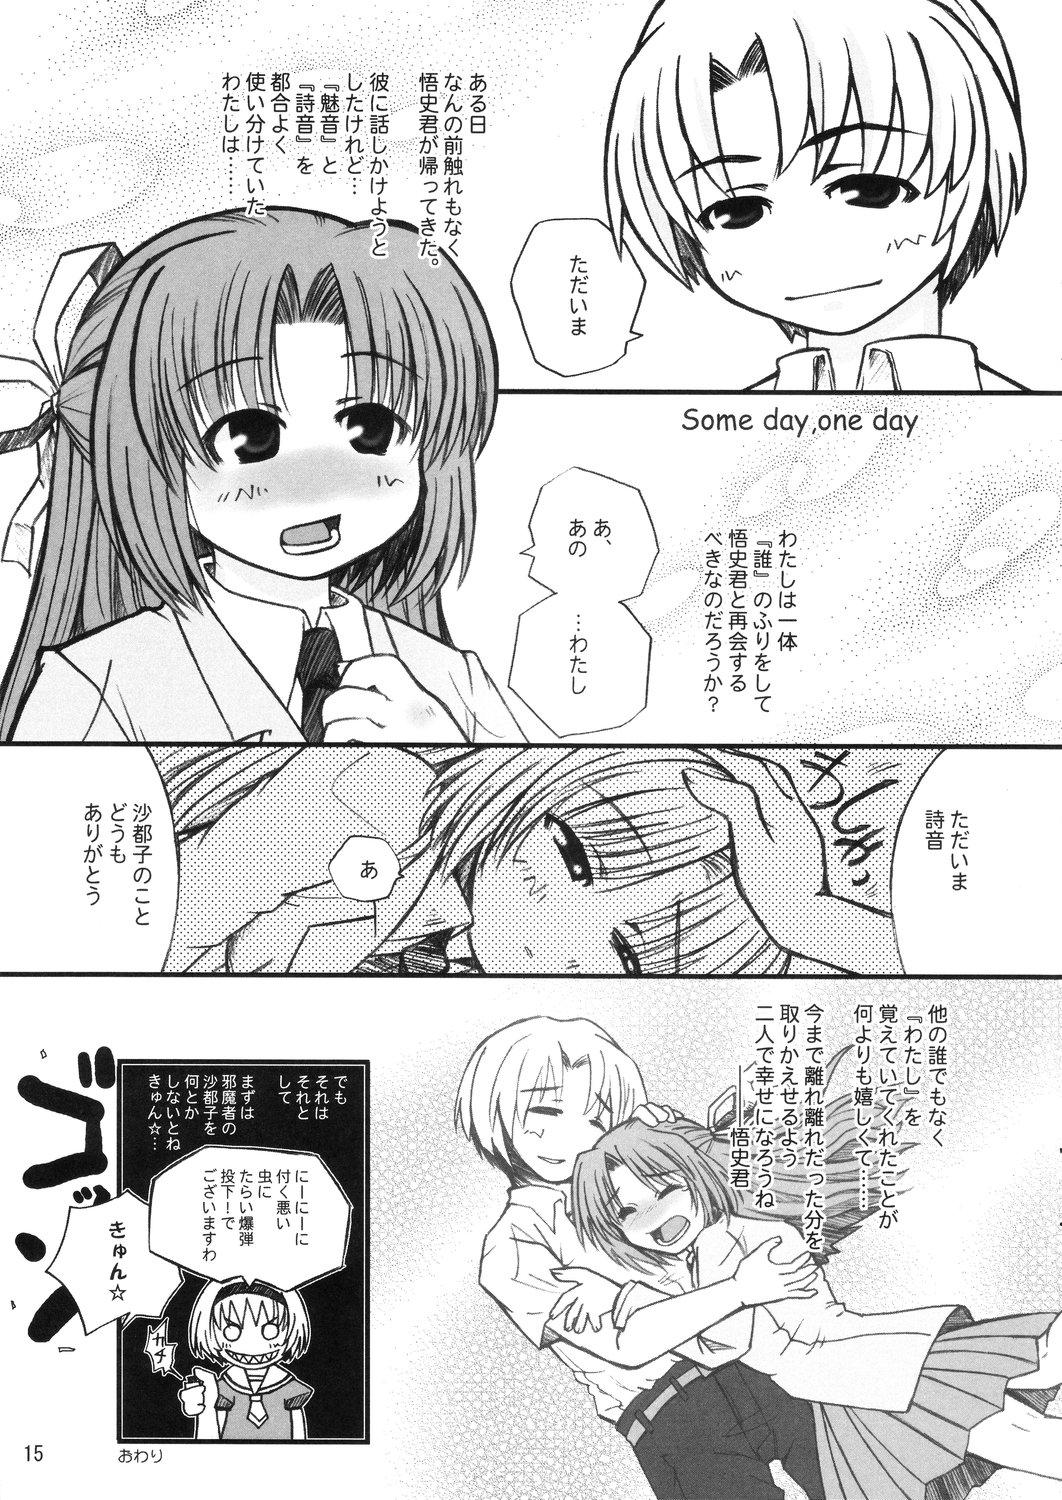 Lez Hinamisawa no hon - Shin Kikoku hen - Higurashi no naku koro ni | when they cry Hairypussy - Page 15